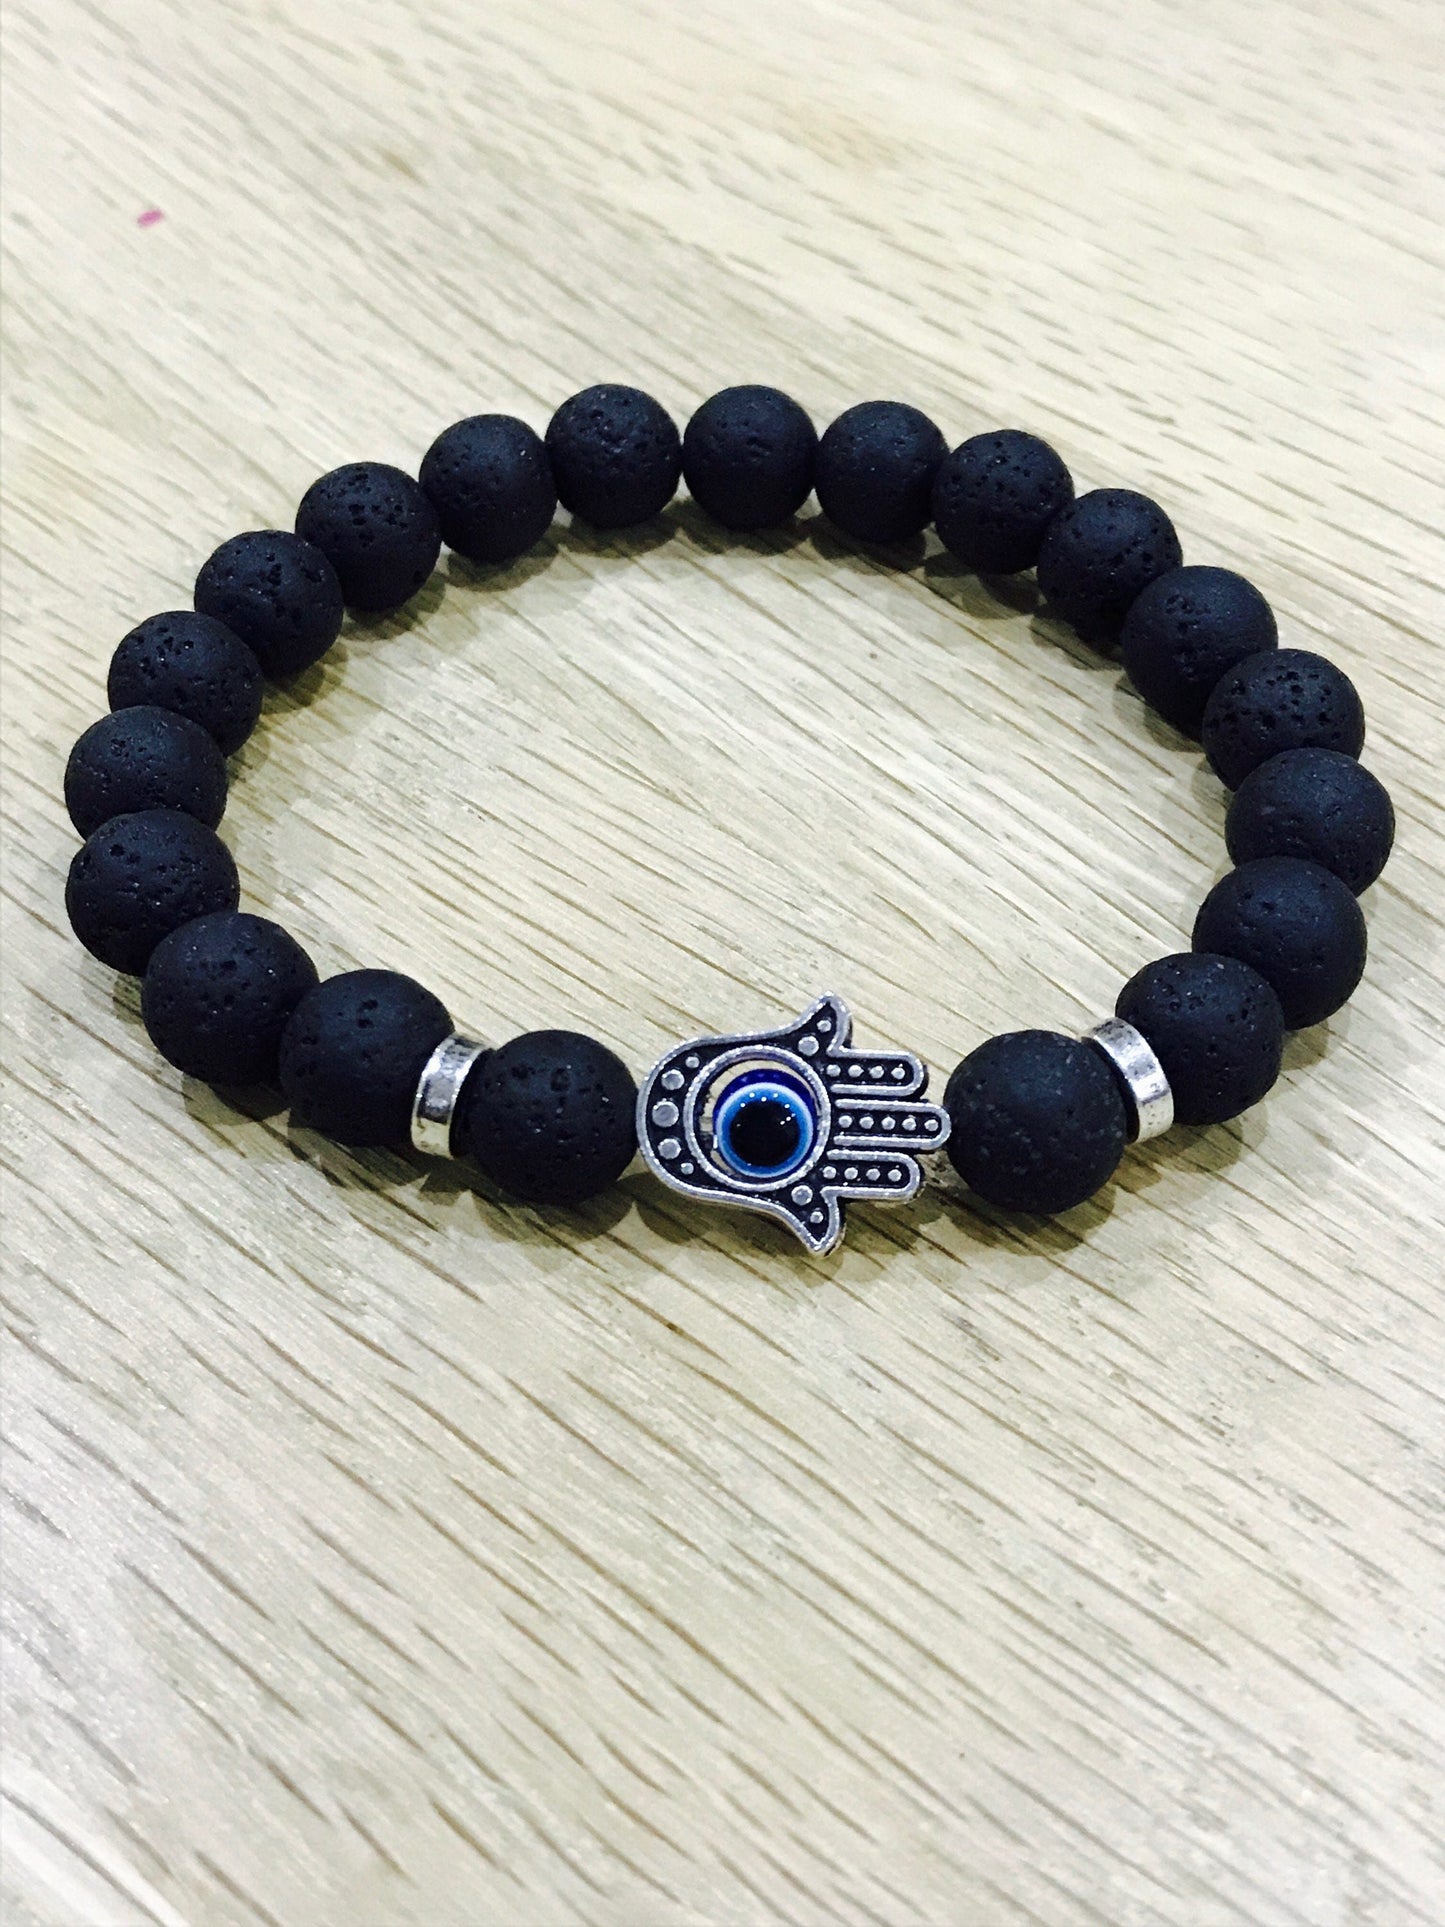 Buddha Black Lava Beads Bracelet elasticated Yoga Natural Gemstone  Meditation Hand of Fatima evil eye Protection